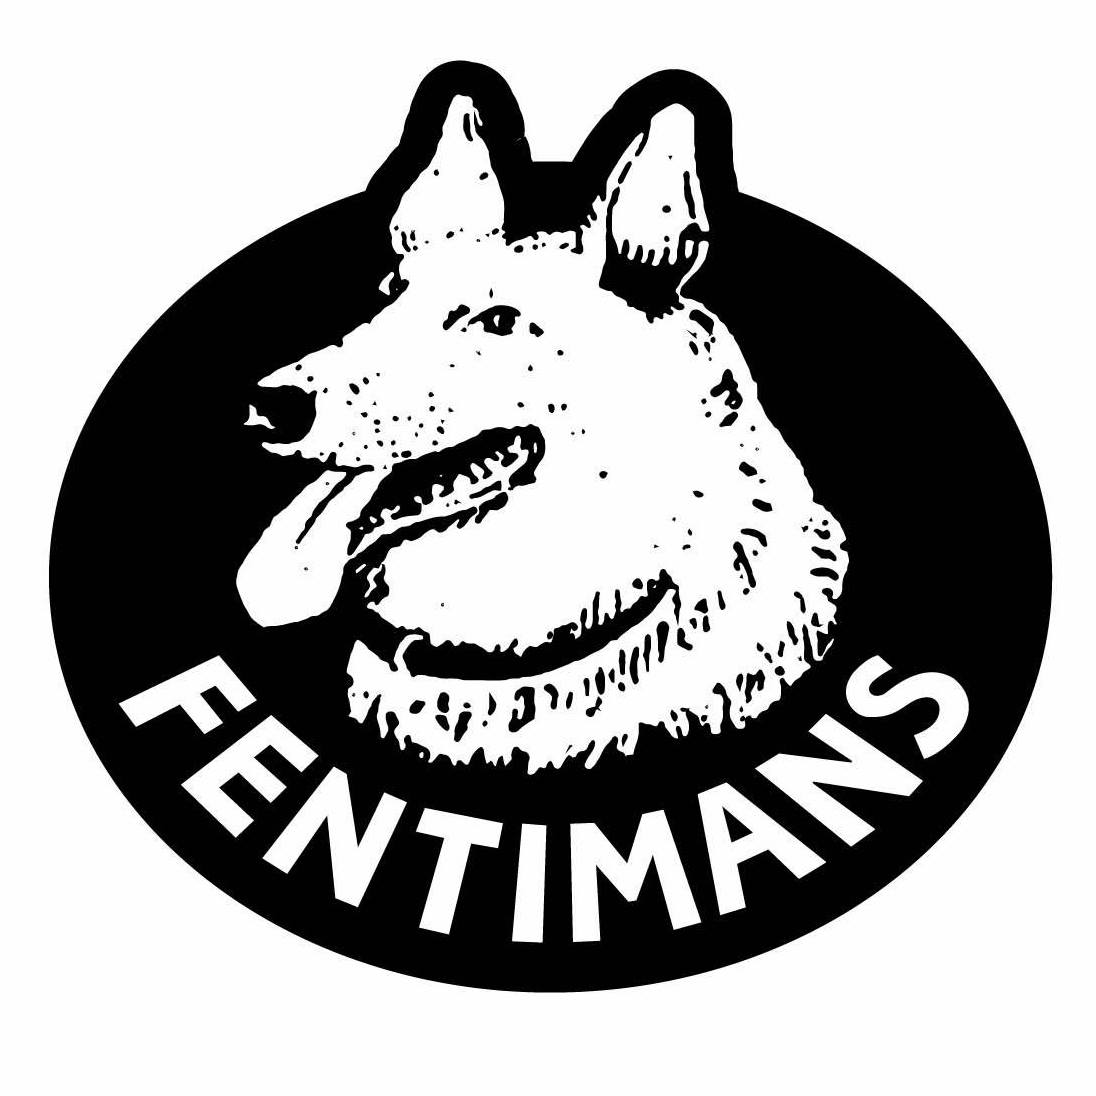 Fentimans brand logo